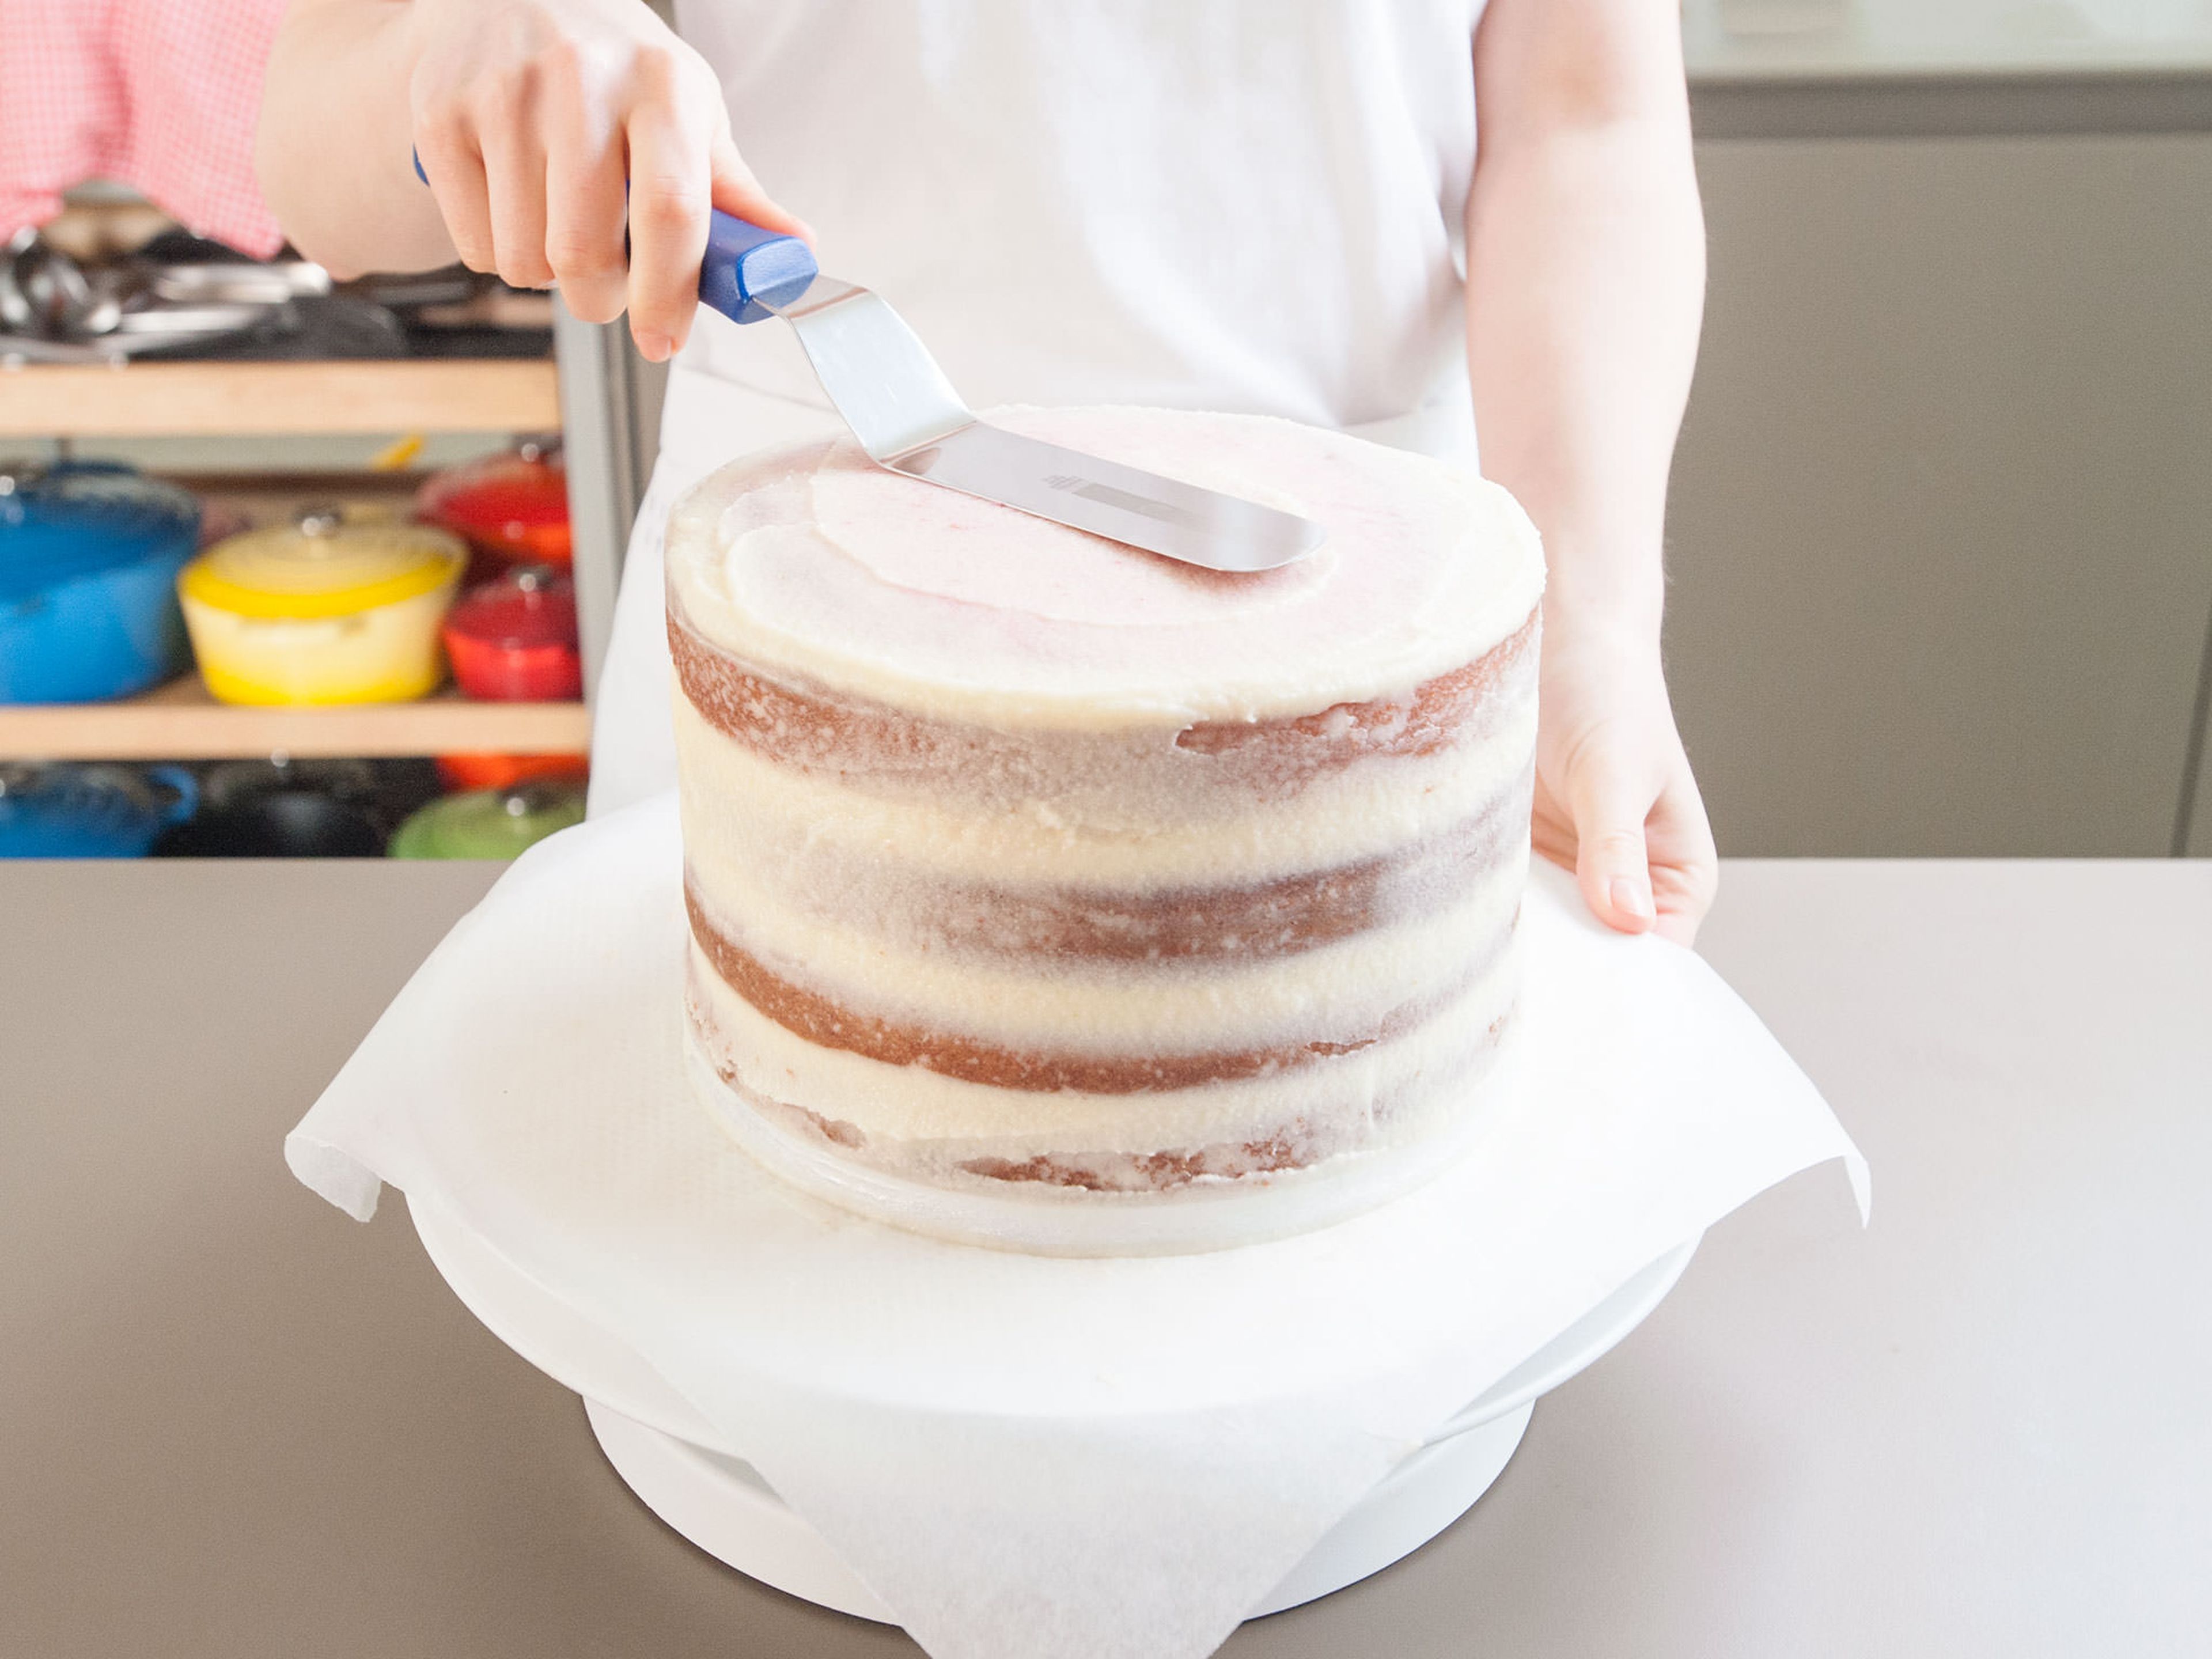 Sobald die Torte gekühlt ist, mit der restlichen Buttercreme bestreichen. Einen Teil der Buttercreme aufheben, wenn du später noch etwas auf den Kuchen schreiben möchtest. Nochmals ca. 15 Min. kühlstellen.